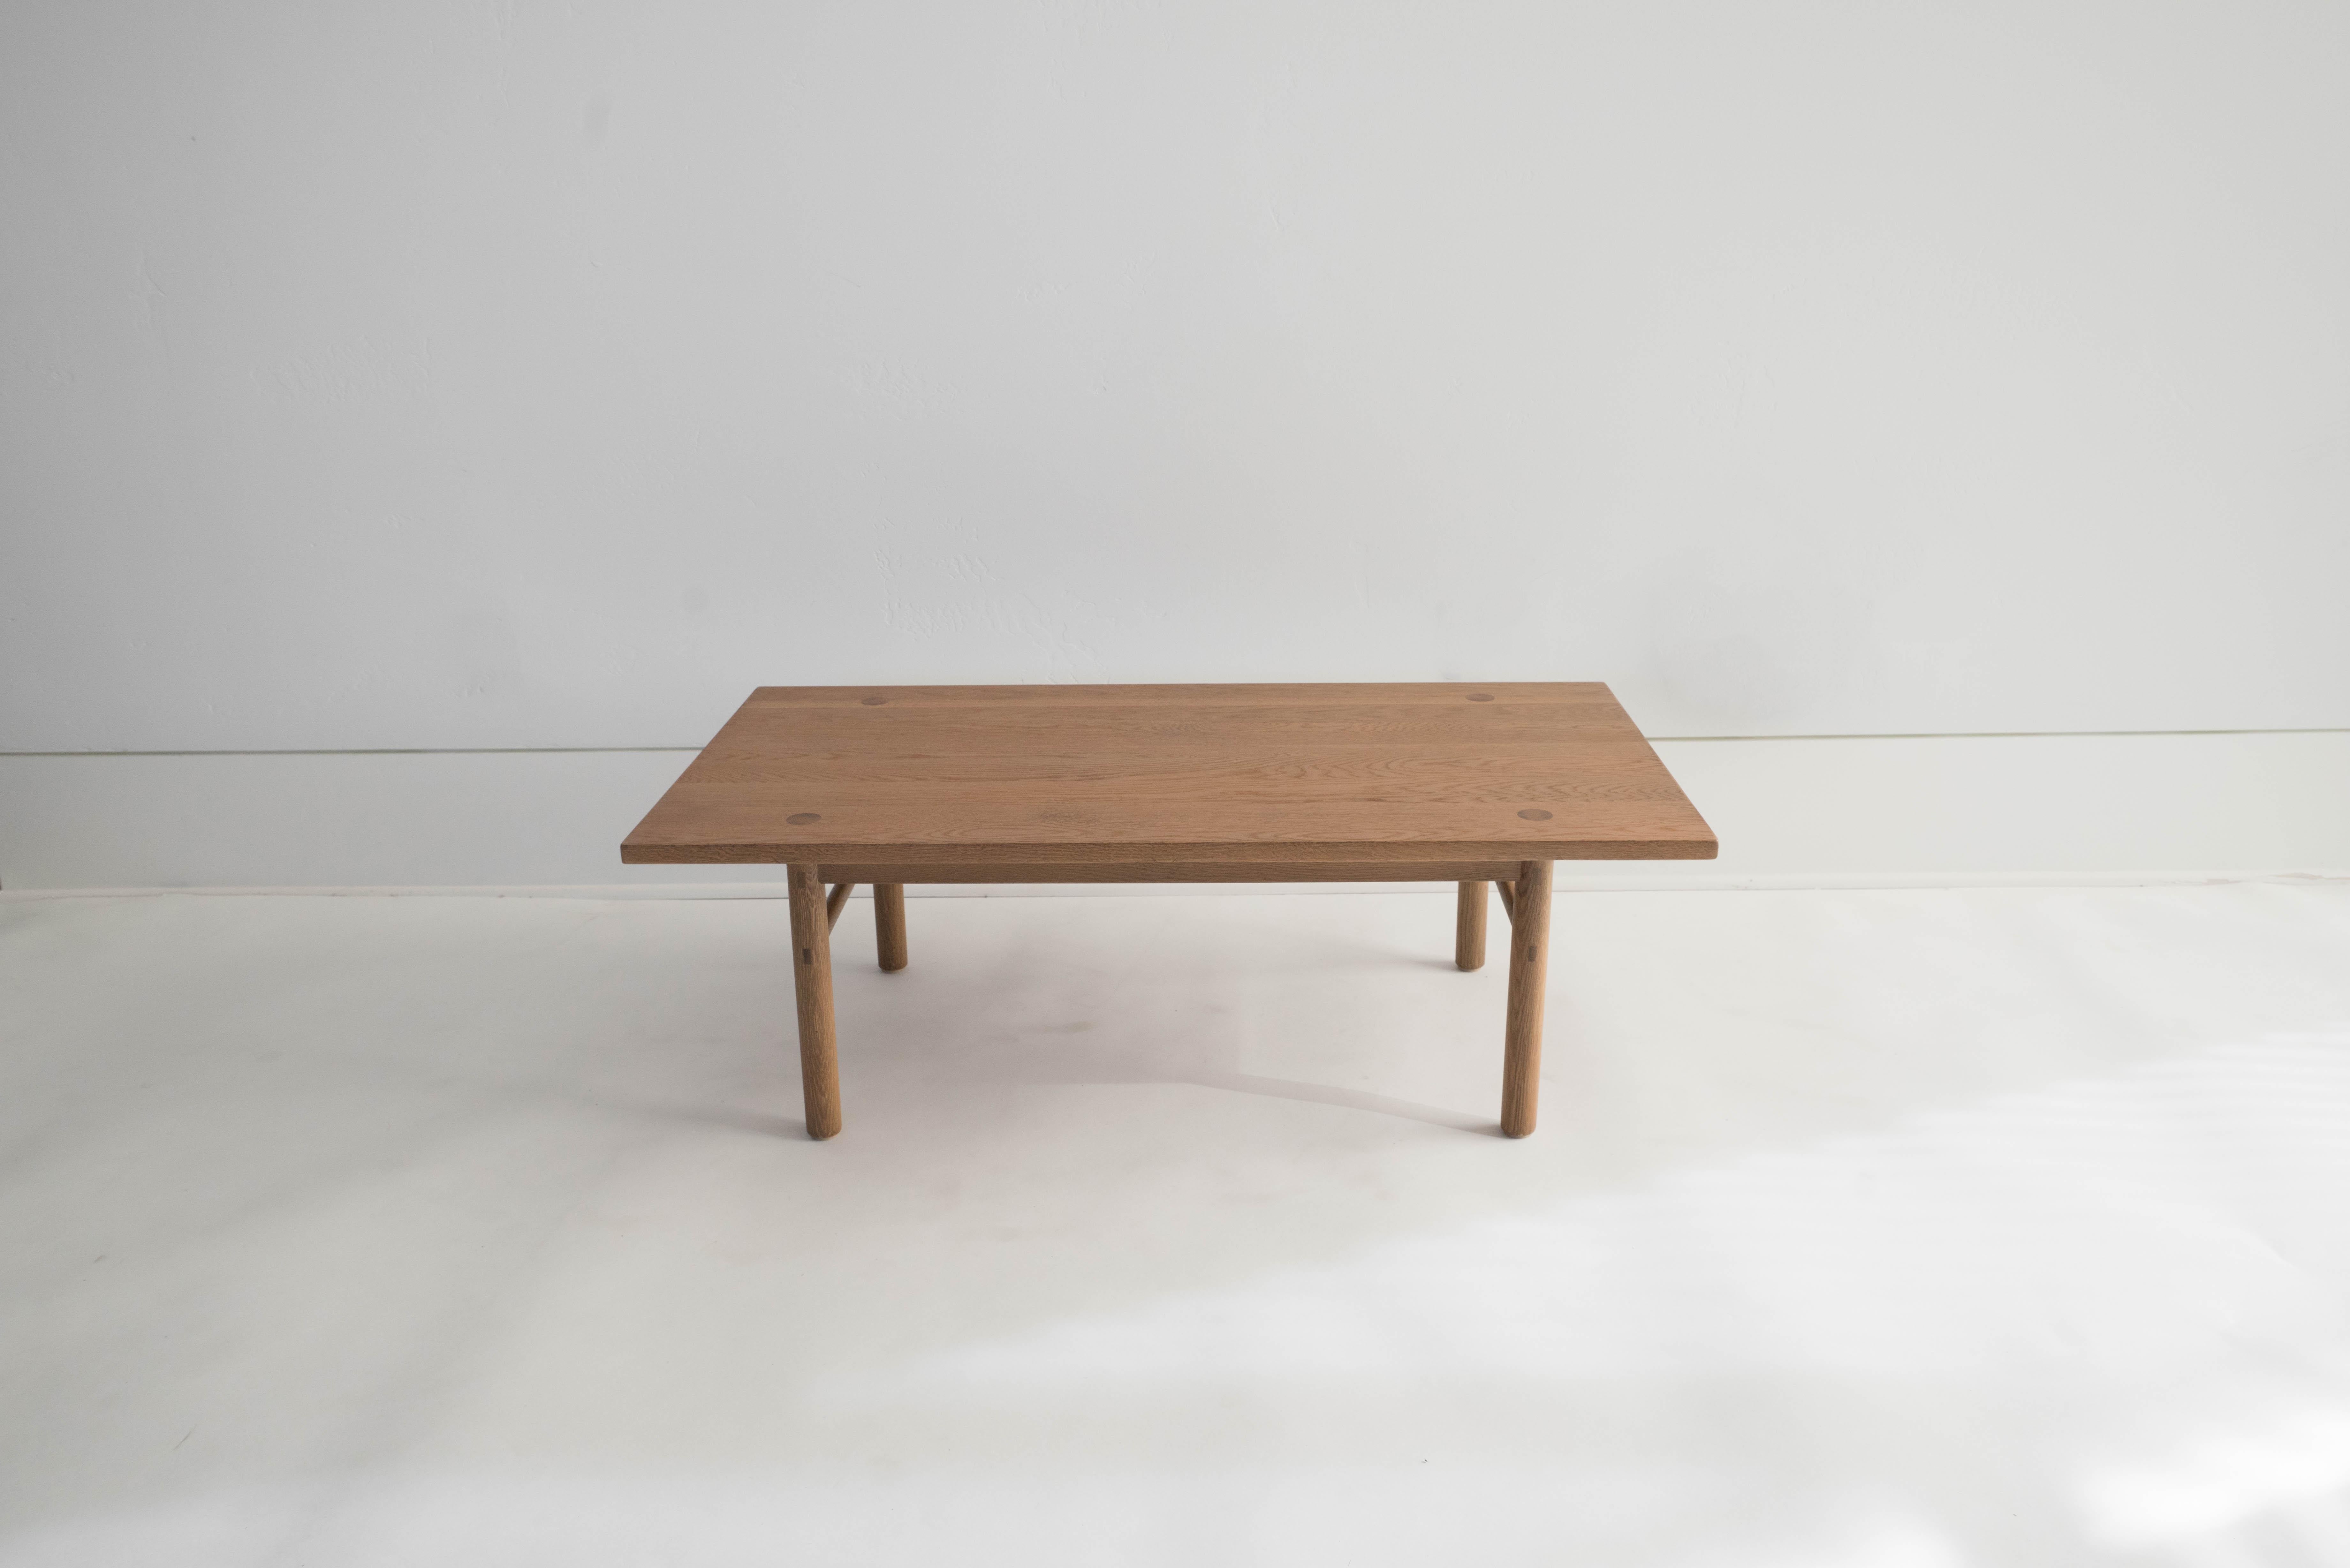 Sun at Six est un studio de conception de mobilier contemporain qui travaille avec des maîtres menuisiers chinois traditionnels pour fabriquer ses pièces à la main en utilisant la menuiserie traditionnelle. Notre table basse classique - simple,